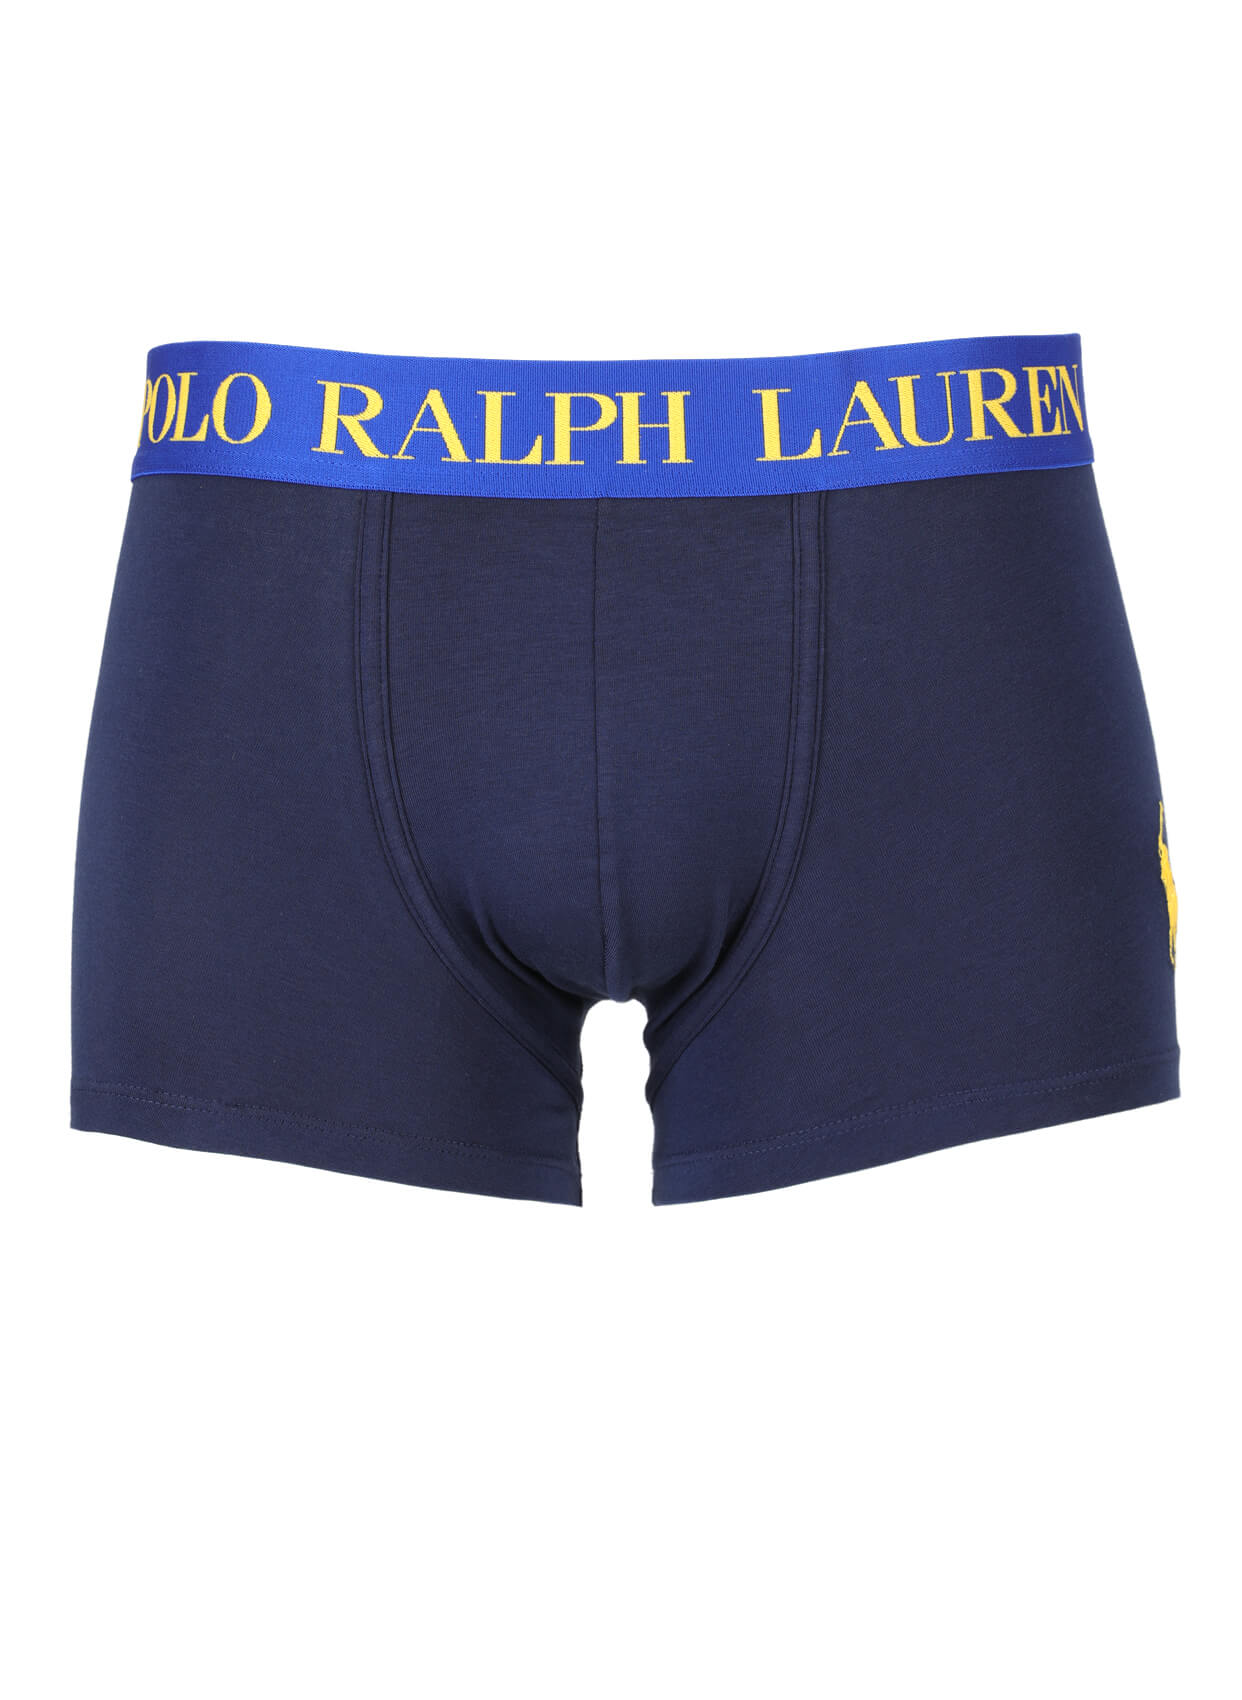 Polo Ralph Lauren Boxer-Libas Trendy Fashion Store